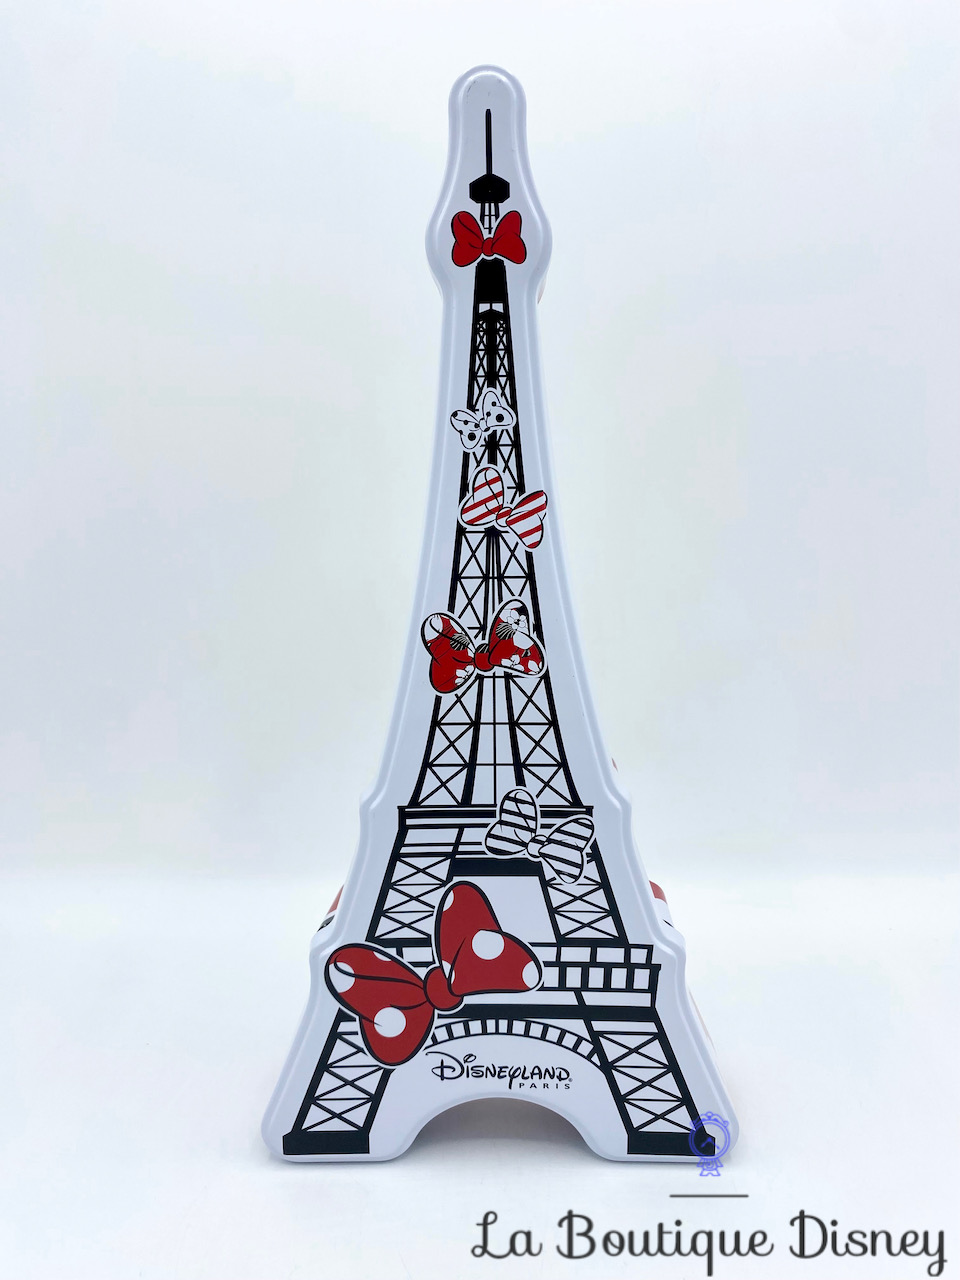 Boite métal Tour Eiffel Disneyland Paris Disney blanc noir rouge